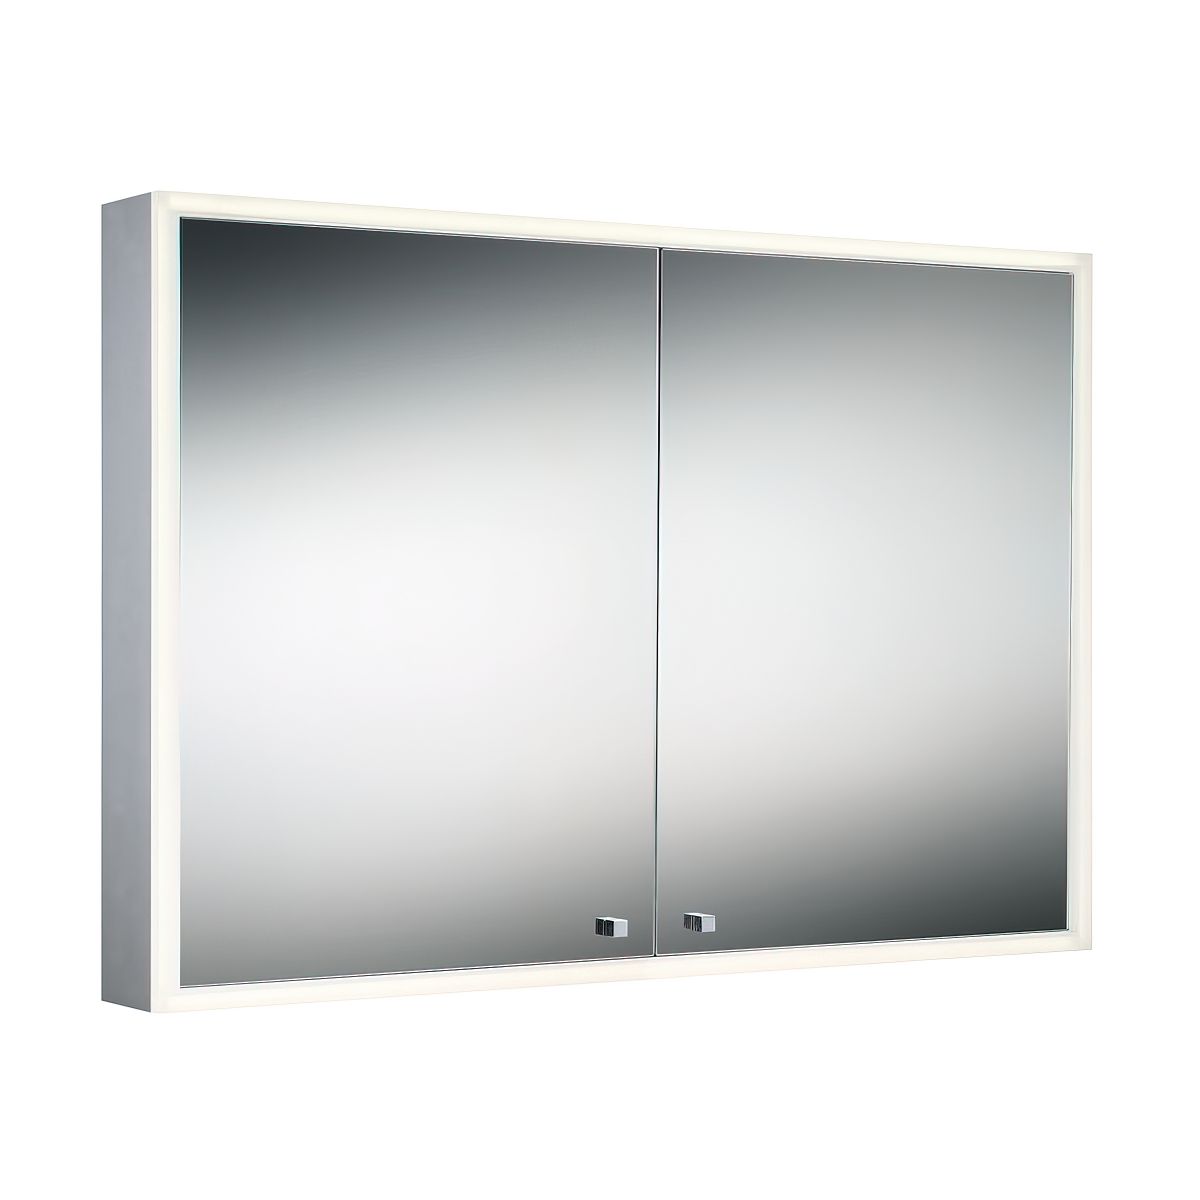 30 In. X 28 In. Double Door Edge-Lit LED Cabinet Mirror